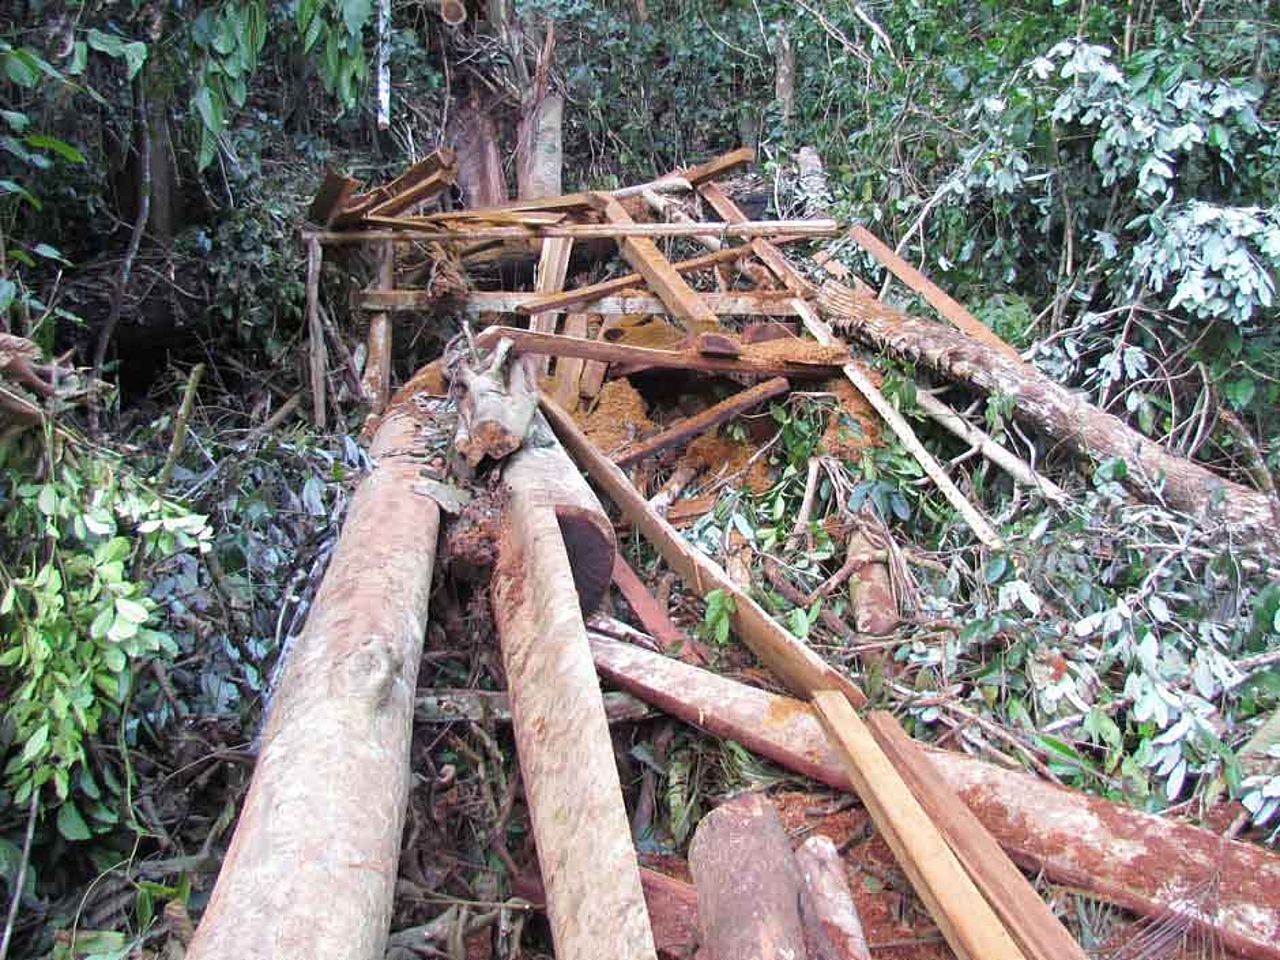 Regenwaldzerstörung am Amazonas nimmt ungeahntes Ausmass an. ©OroVerde